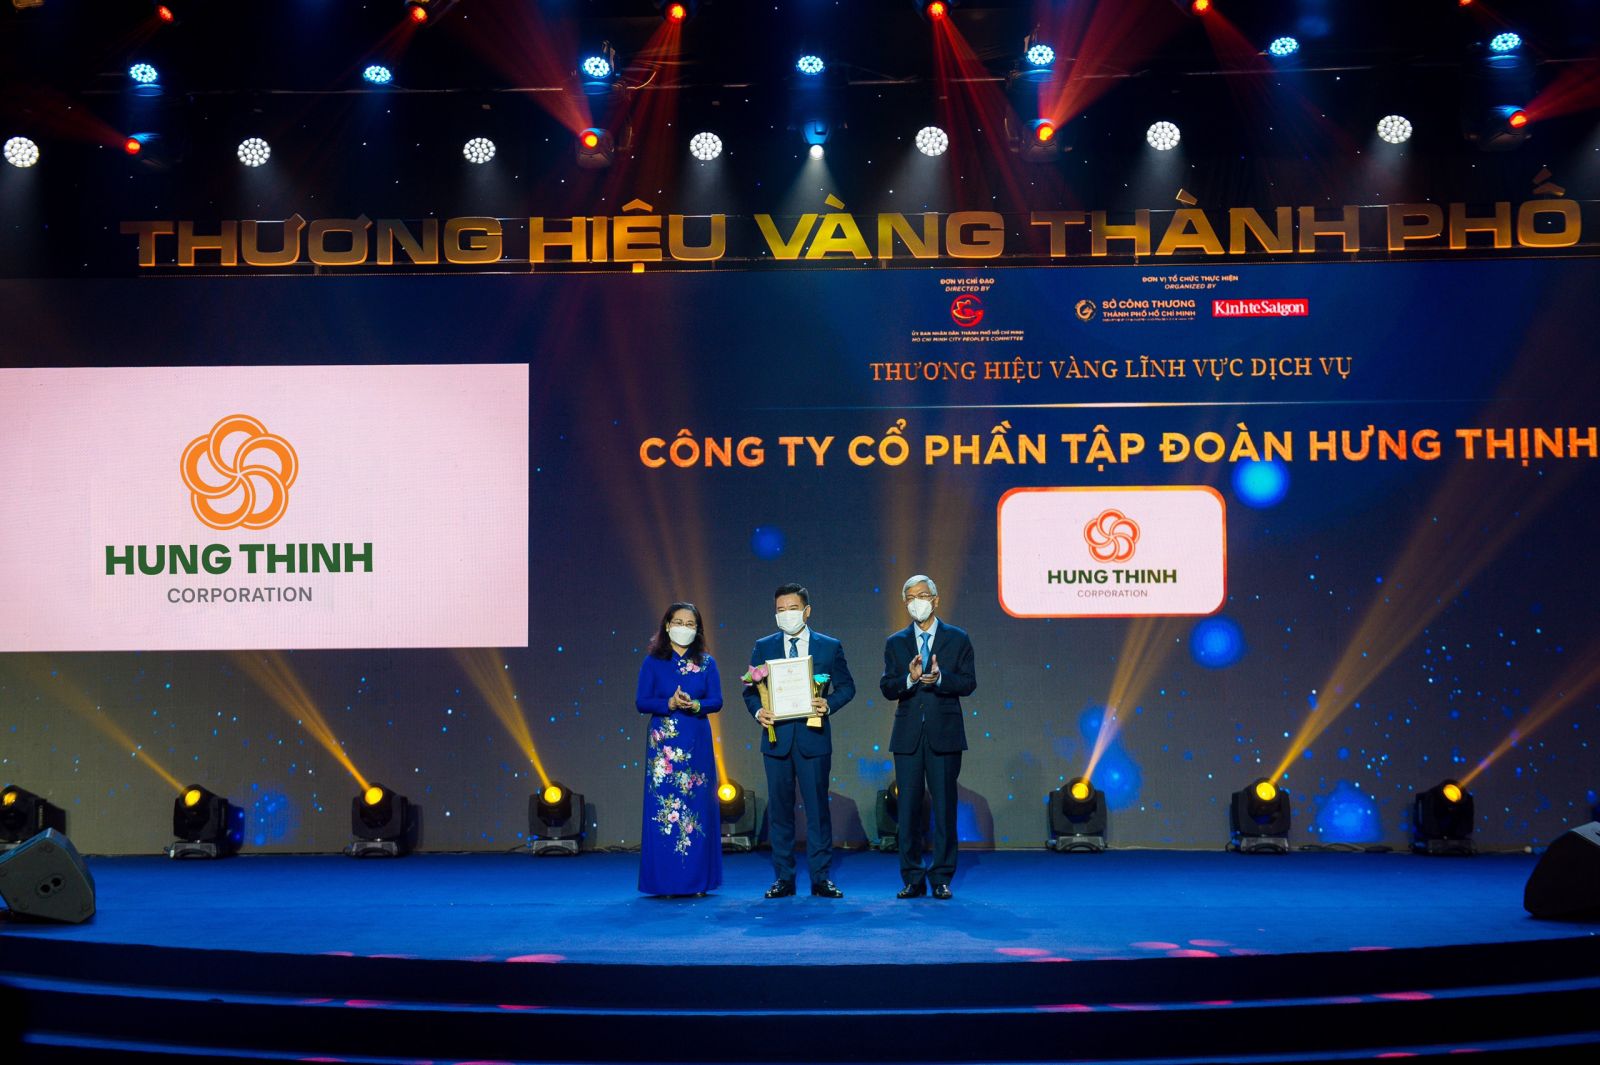 Tập đoàn Hưng Thịnh được bình chọn là Thương hiệu Vàng TP.HCM 2021